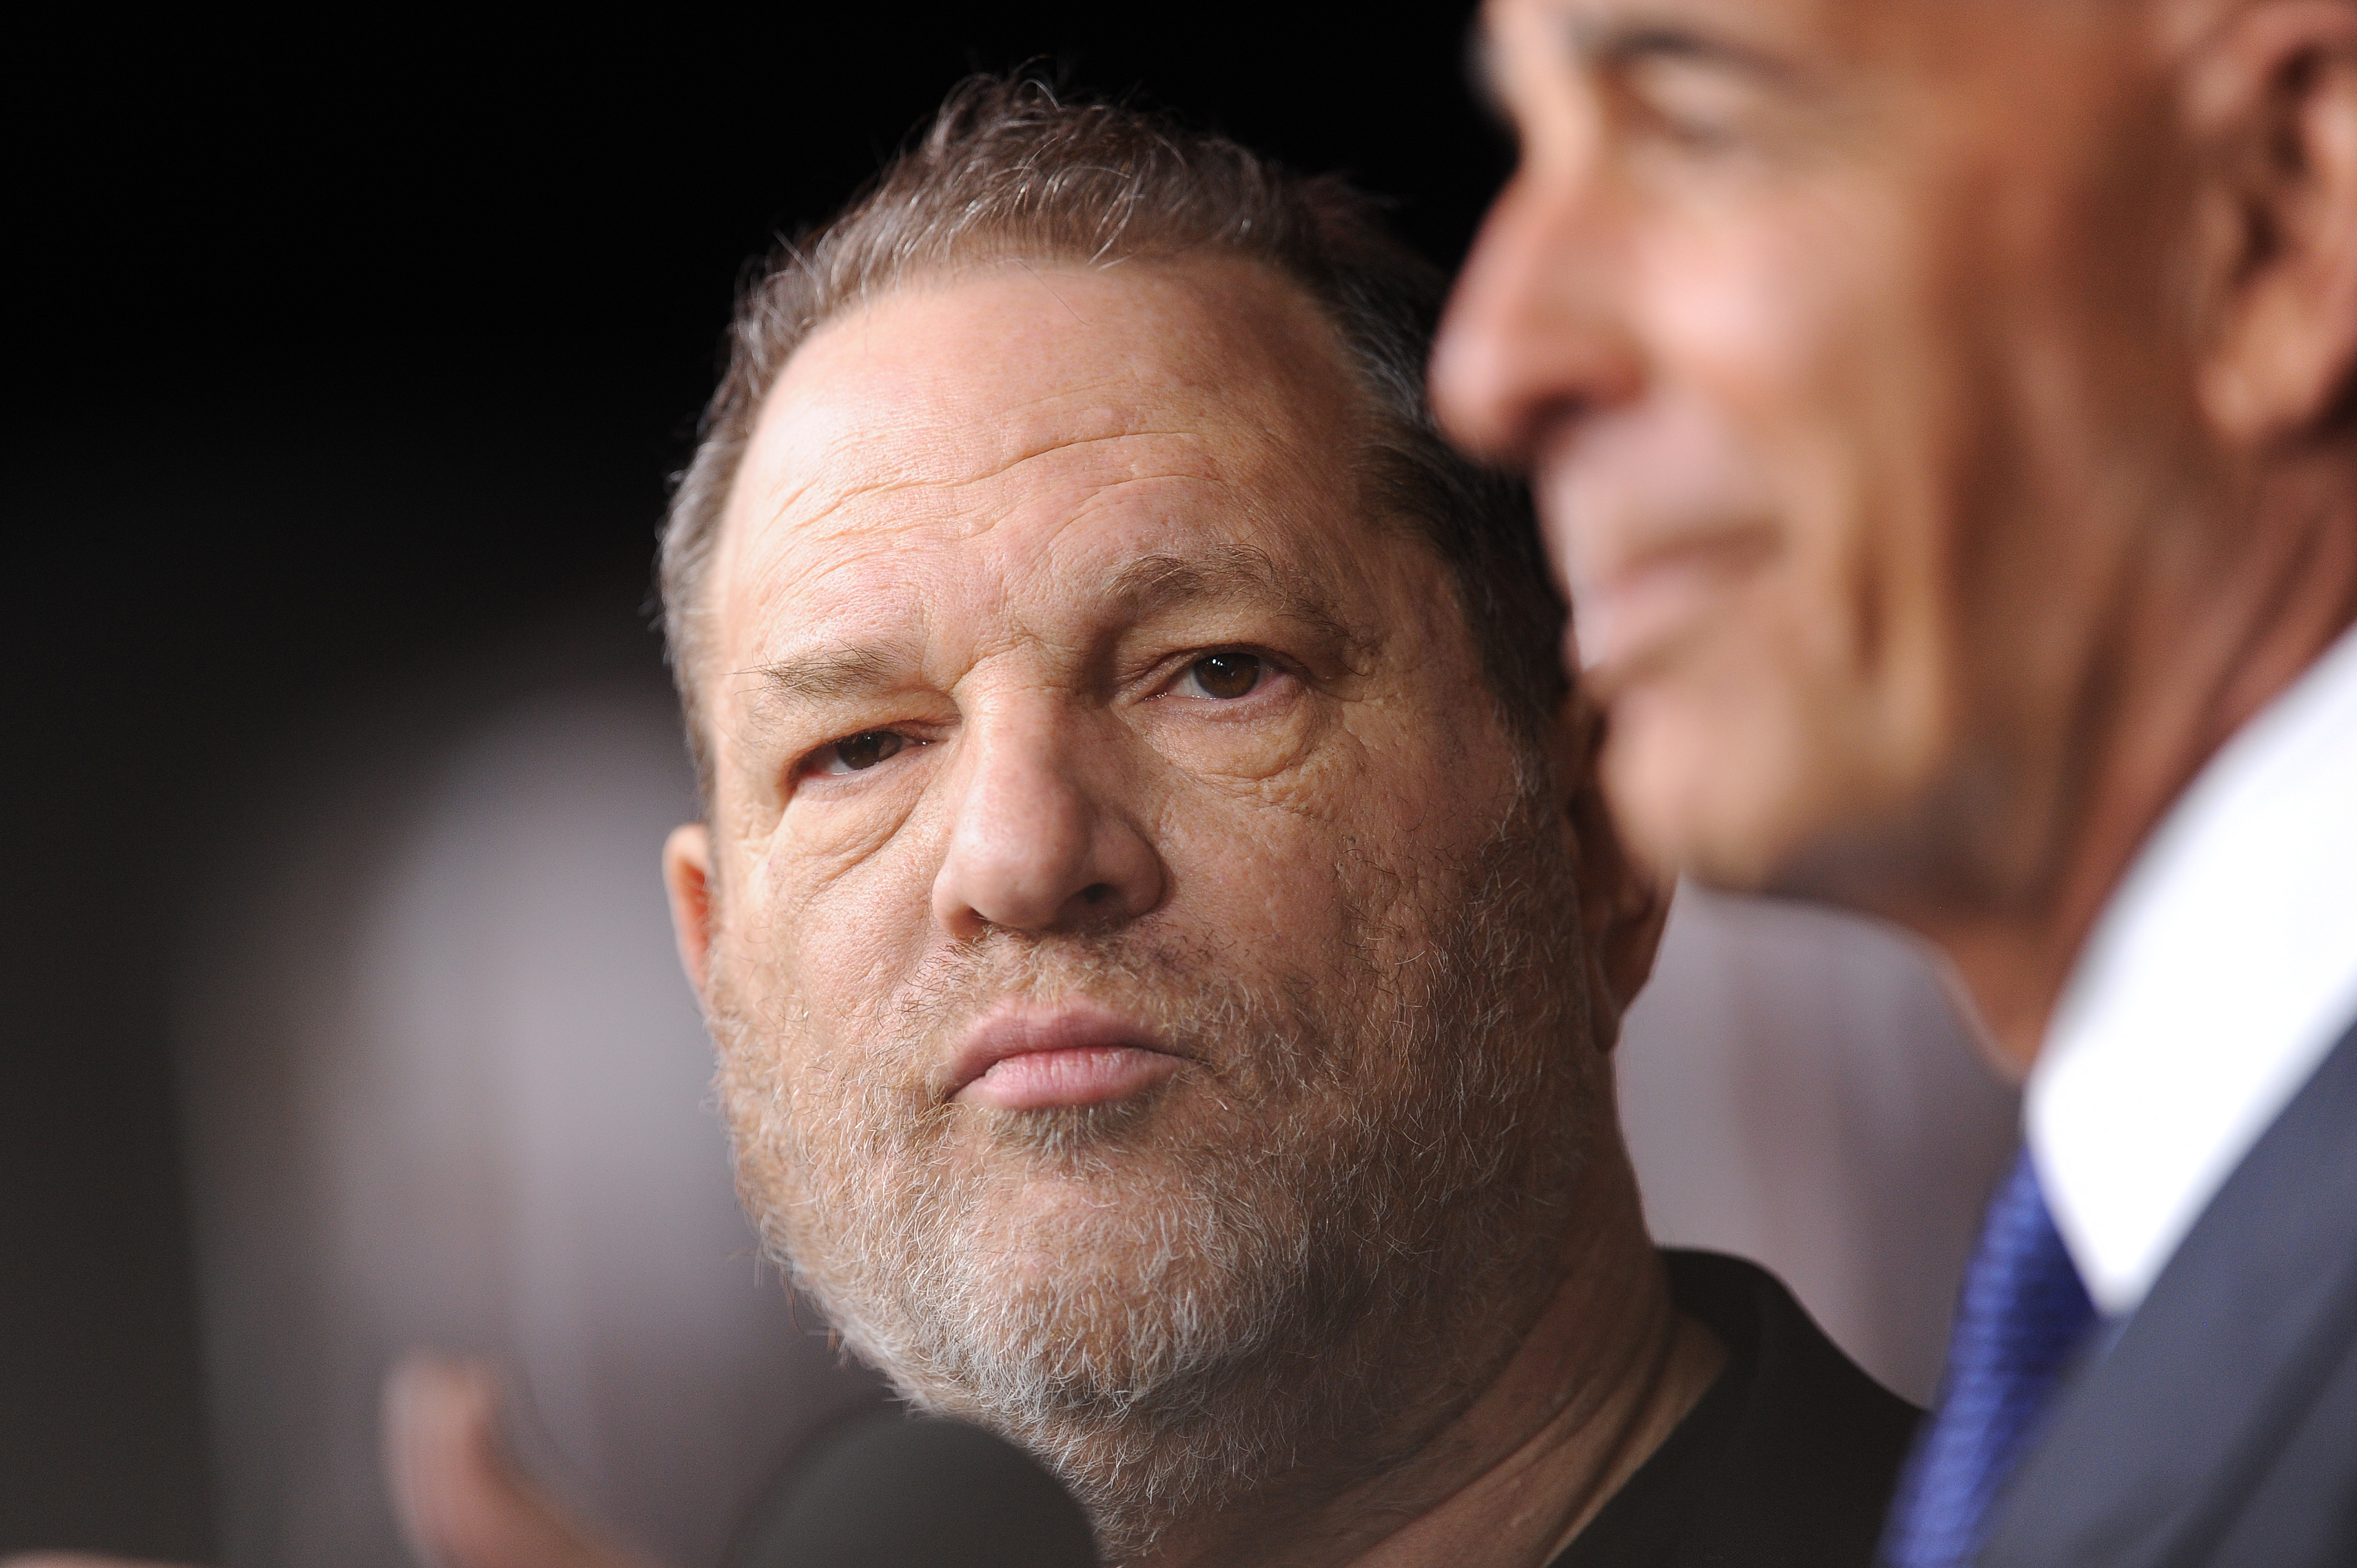 Harvey Weinstein izraeli exkémeket fogadott, hogy elhallgattassa a zaklatásairól szóló történeteket